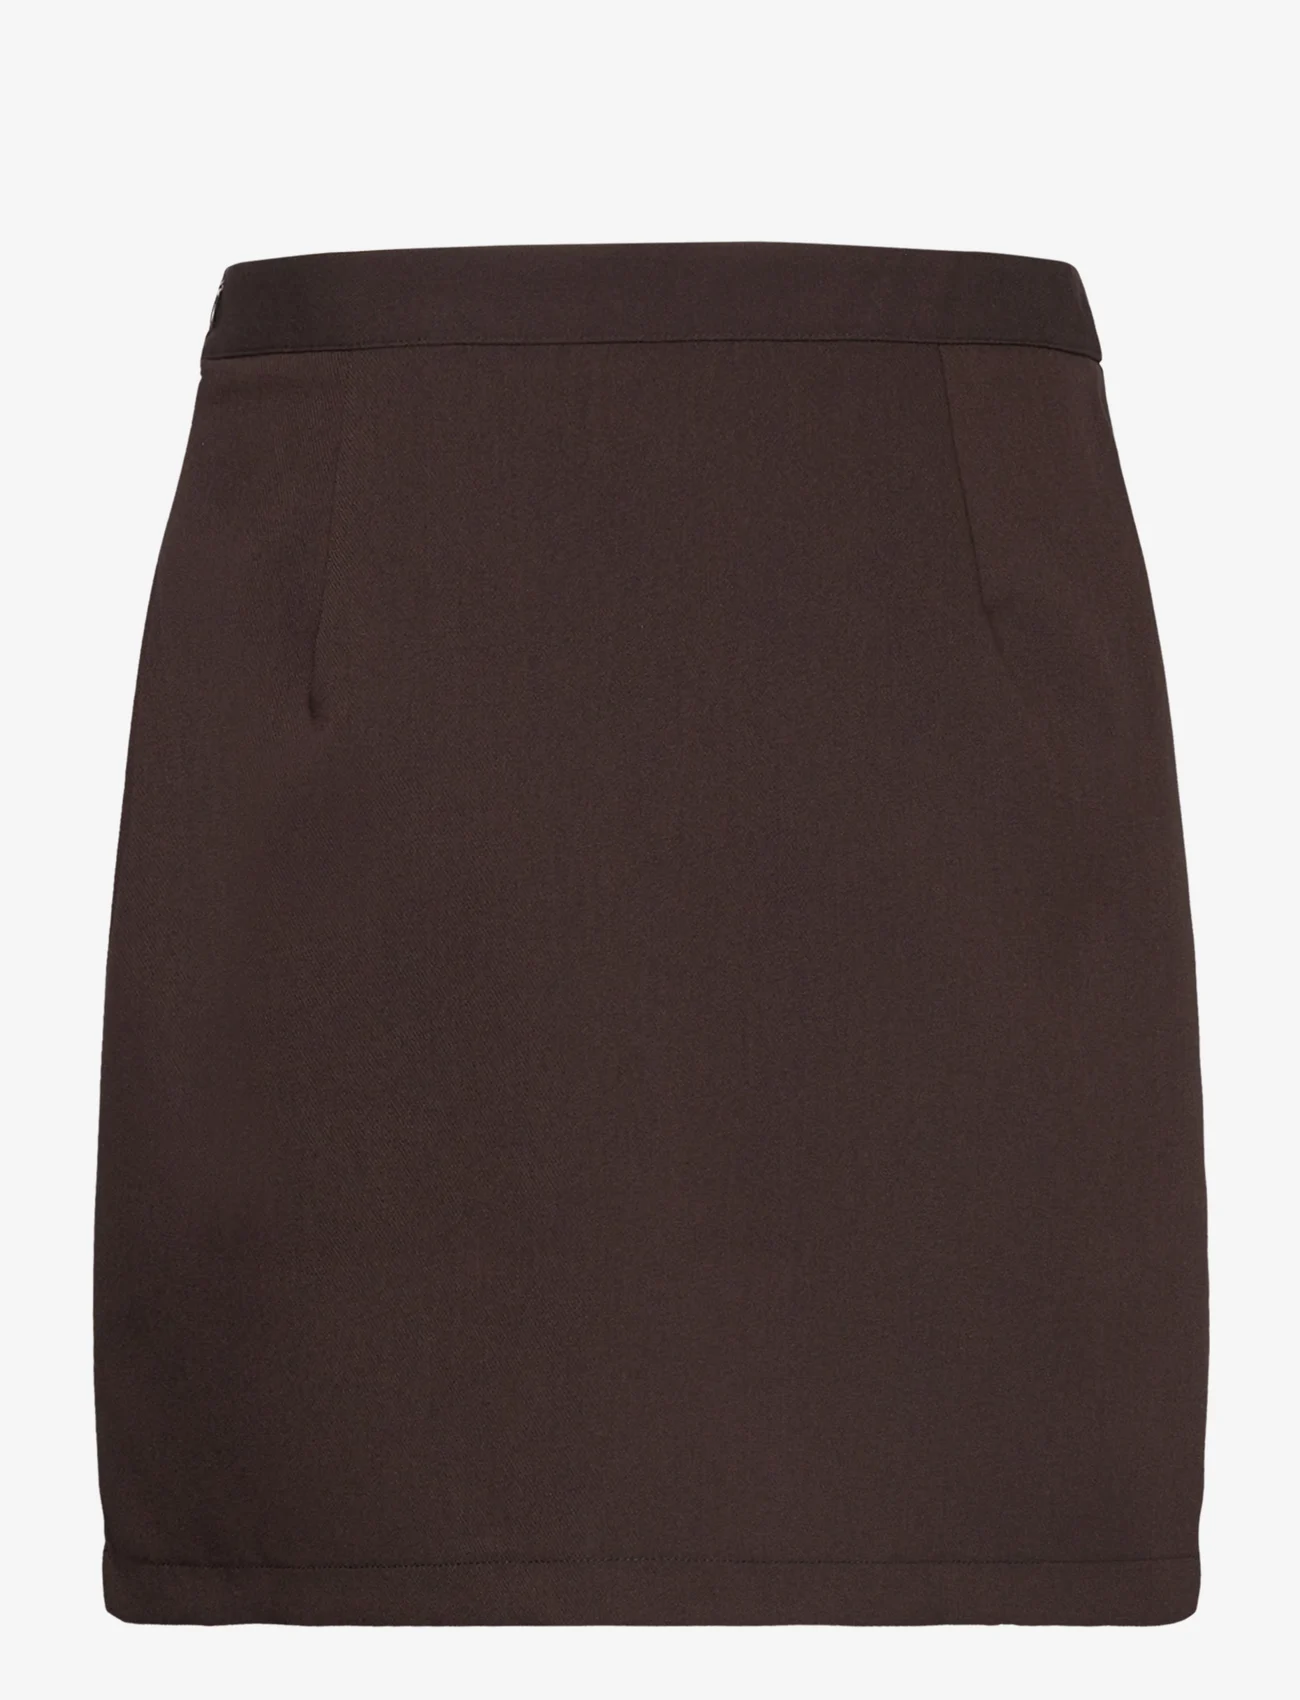 A-View - Annali skirt-1 - kurze röcke - brown - 1